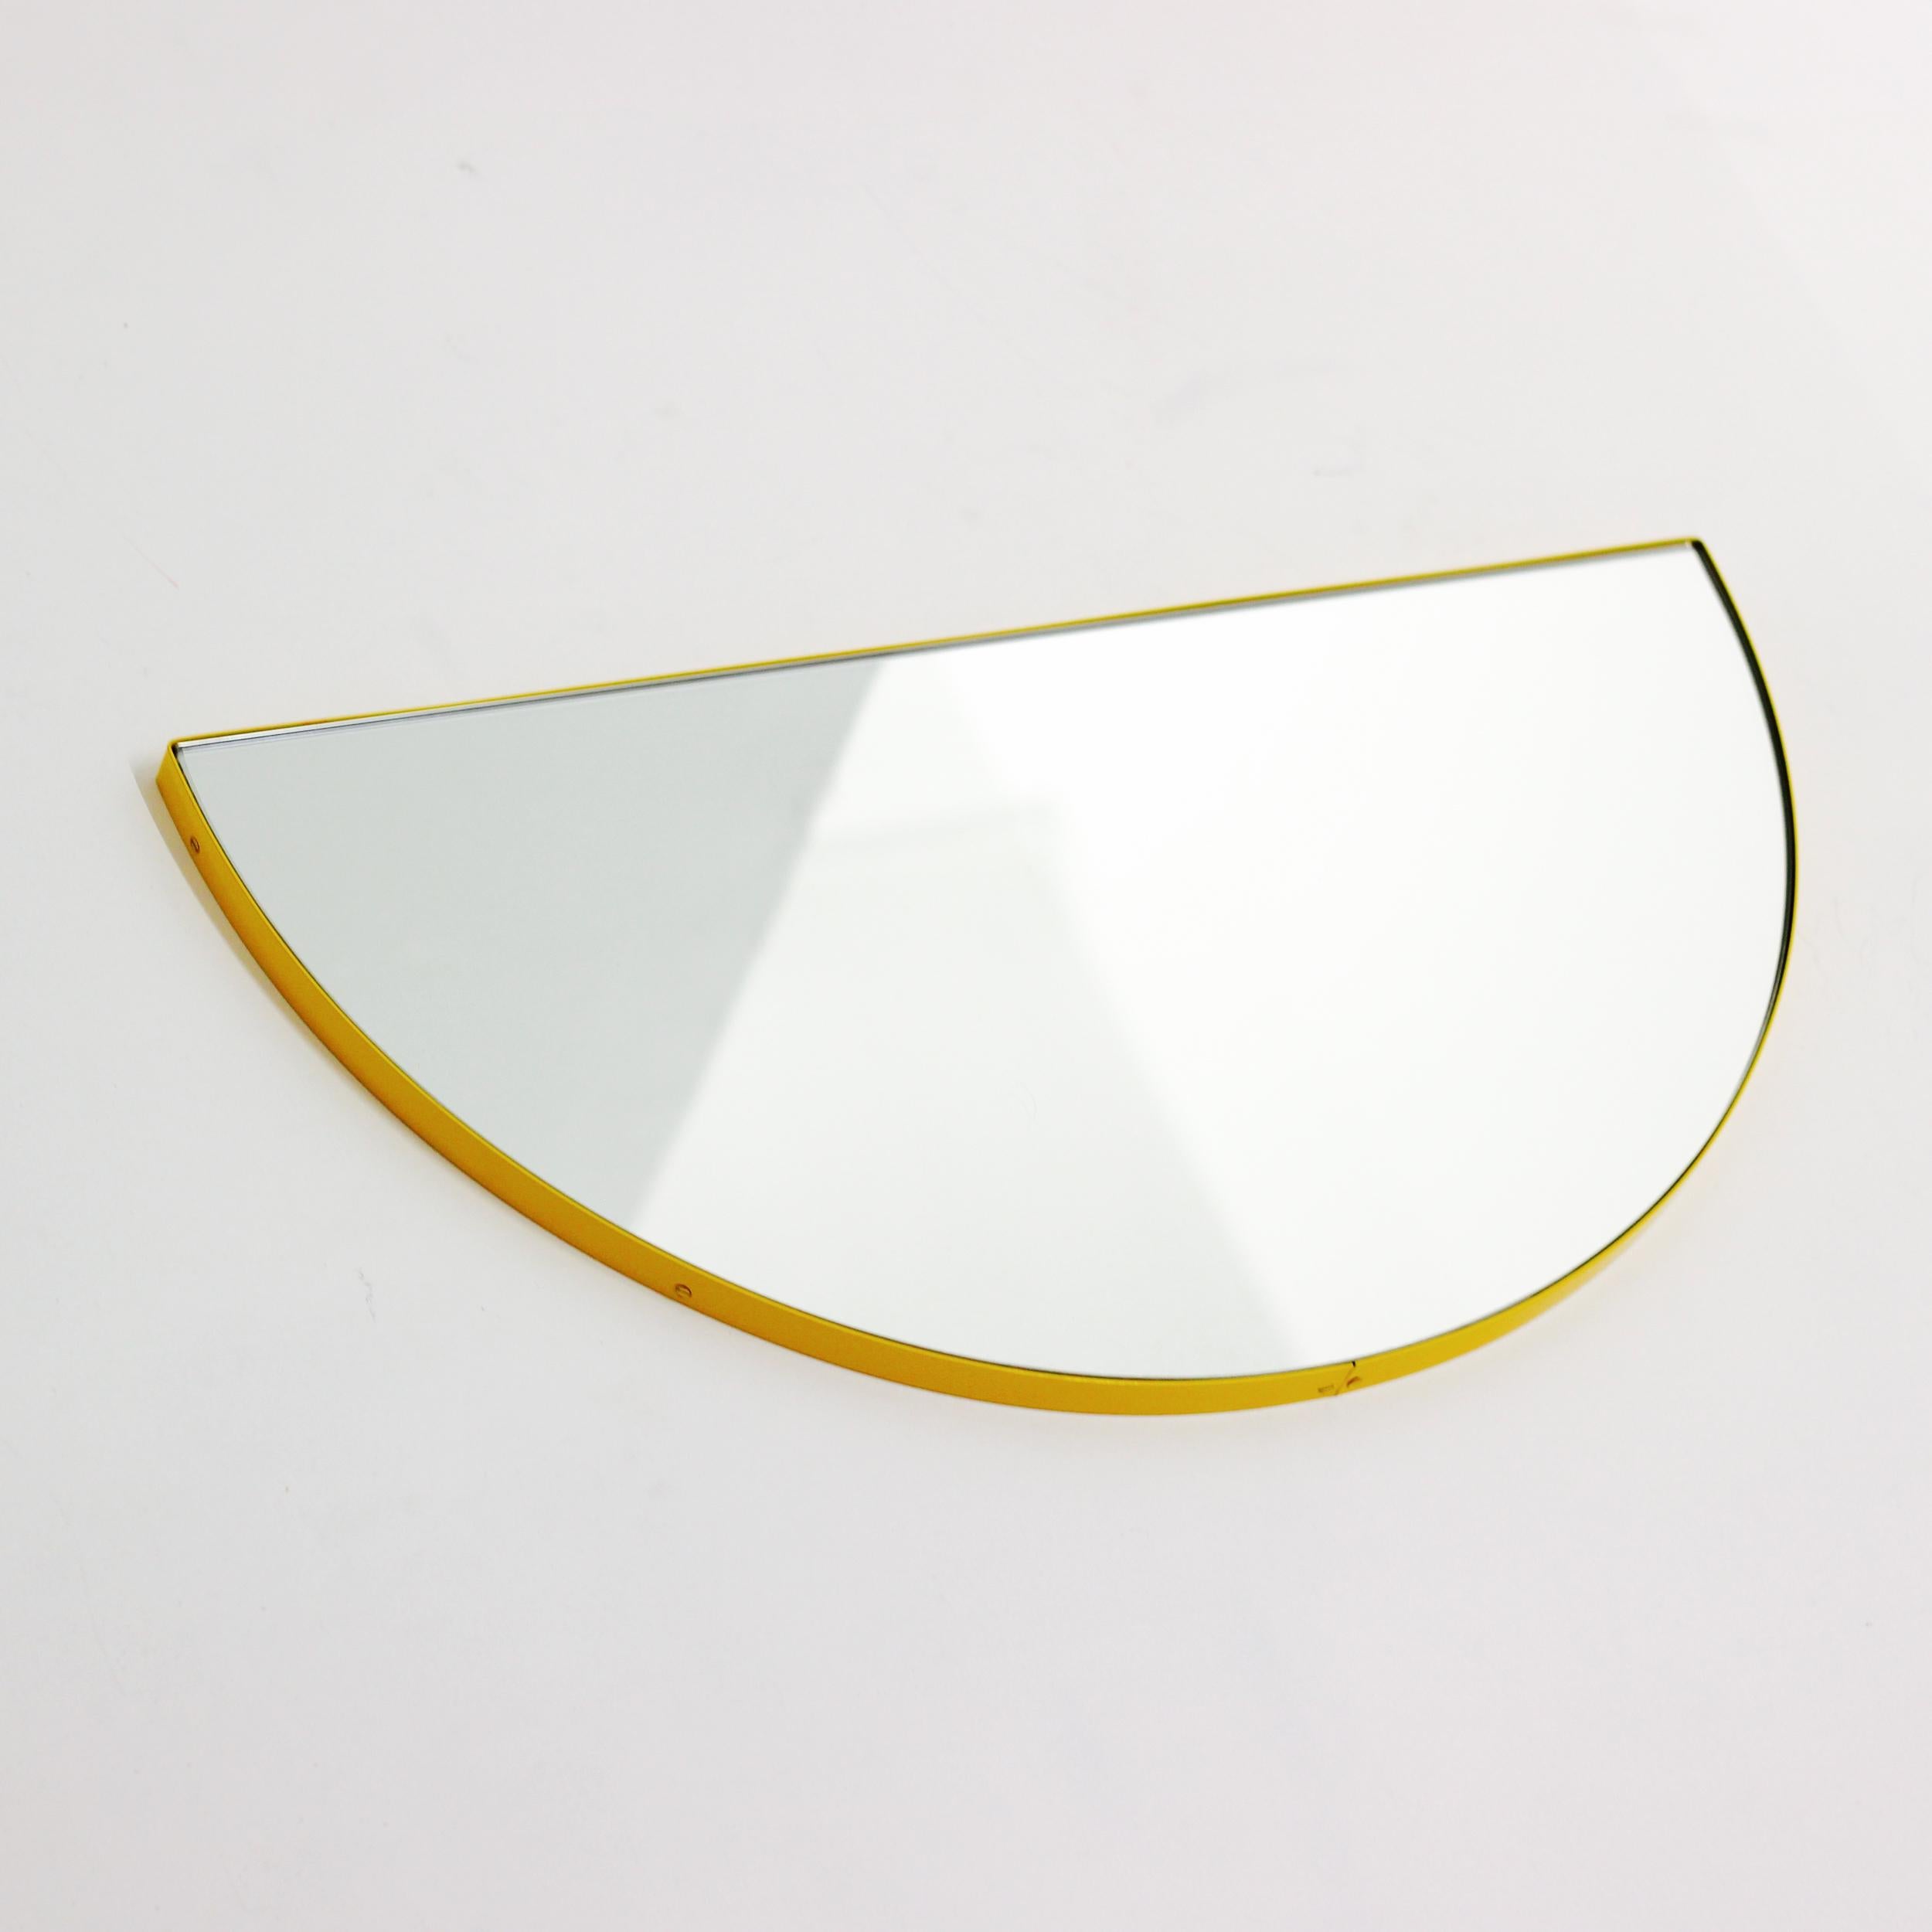 Miroir demi-lune original et minimaliste avec un cadre moderne en aluminium peint par poudrage. Conçu et fabriqué à Londres, au Royaume-Uni.
 
Équipé d'un ingénieux système de tasseaux à la française, le miroir peut être suspendu au ras du mur dans